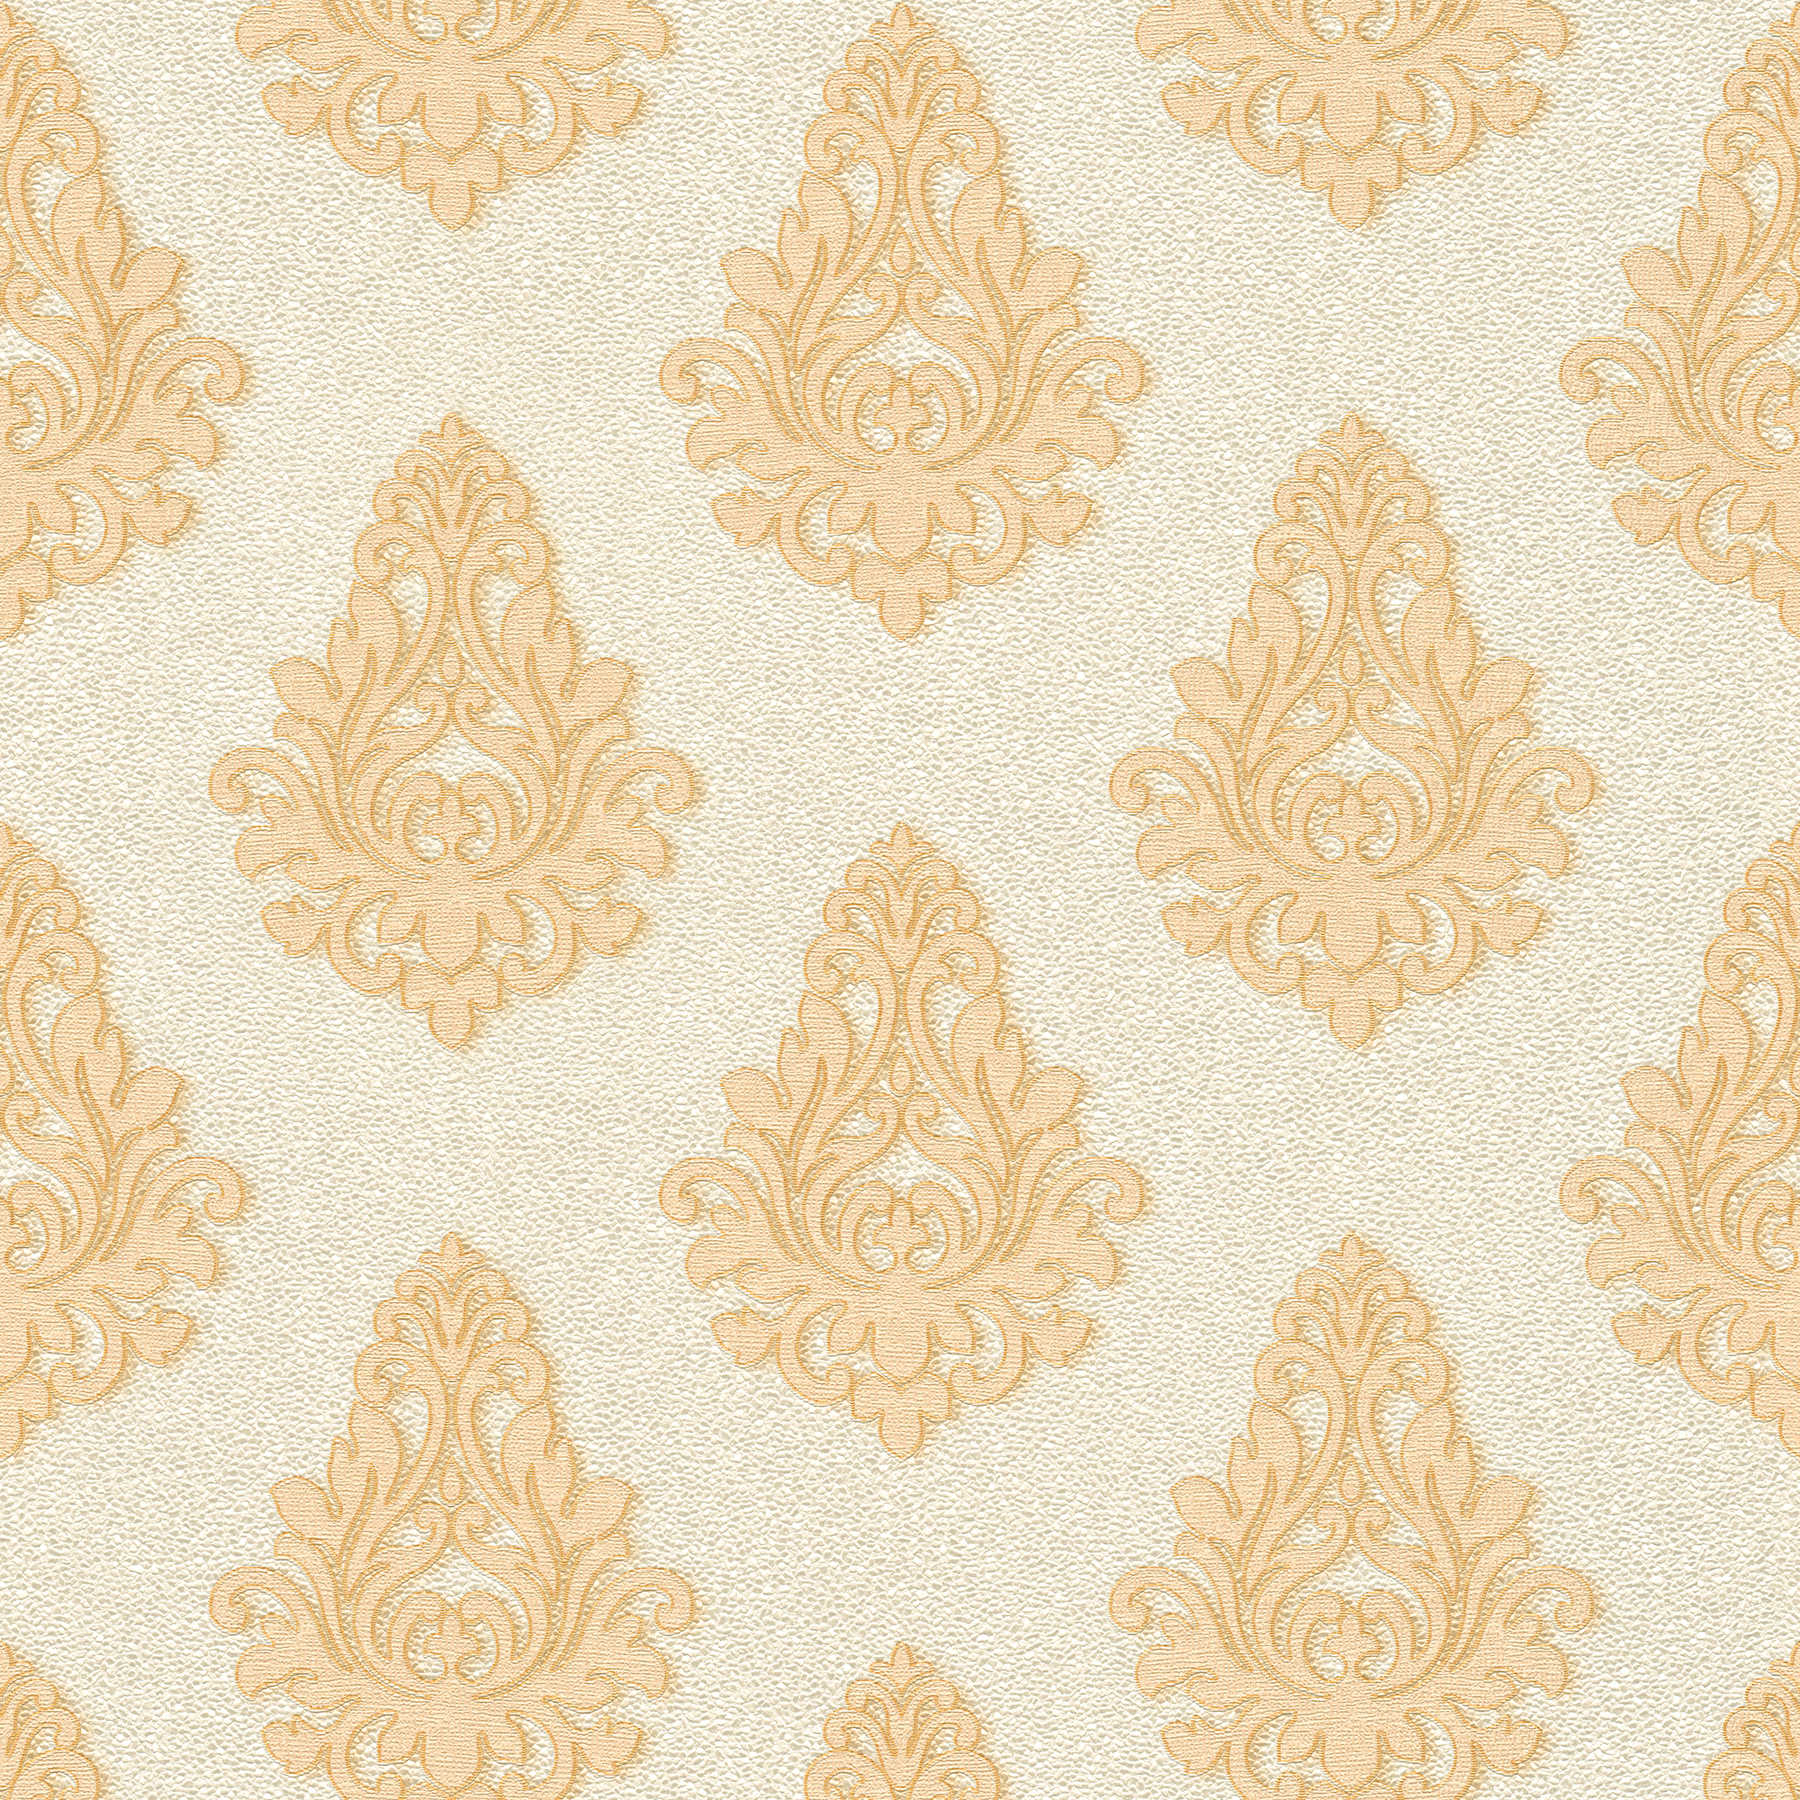             Ornament Tapete strukturiert mit Metallic-Effekt – Creme, Gold, Weiß
        